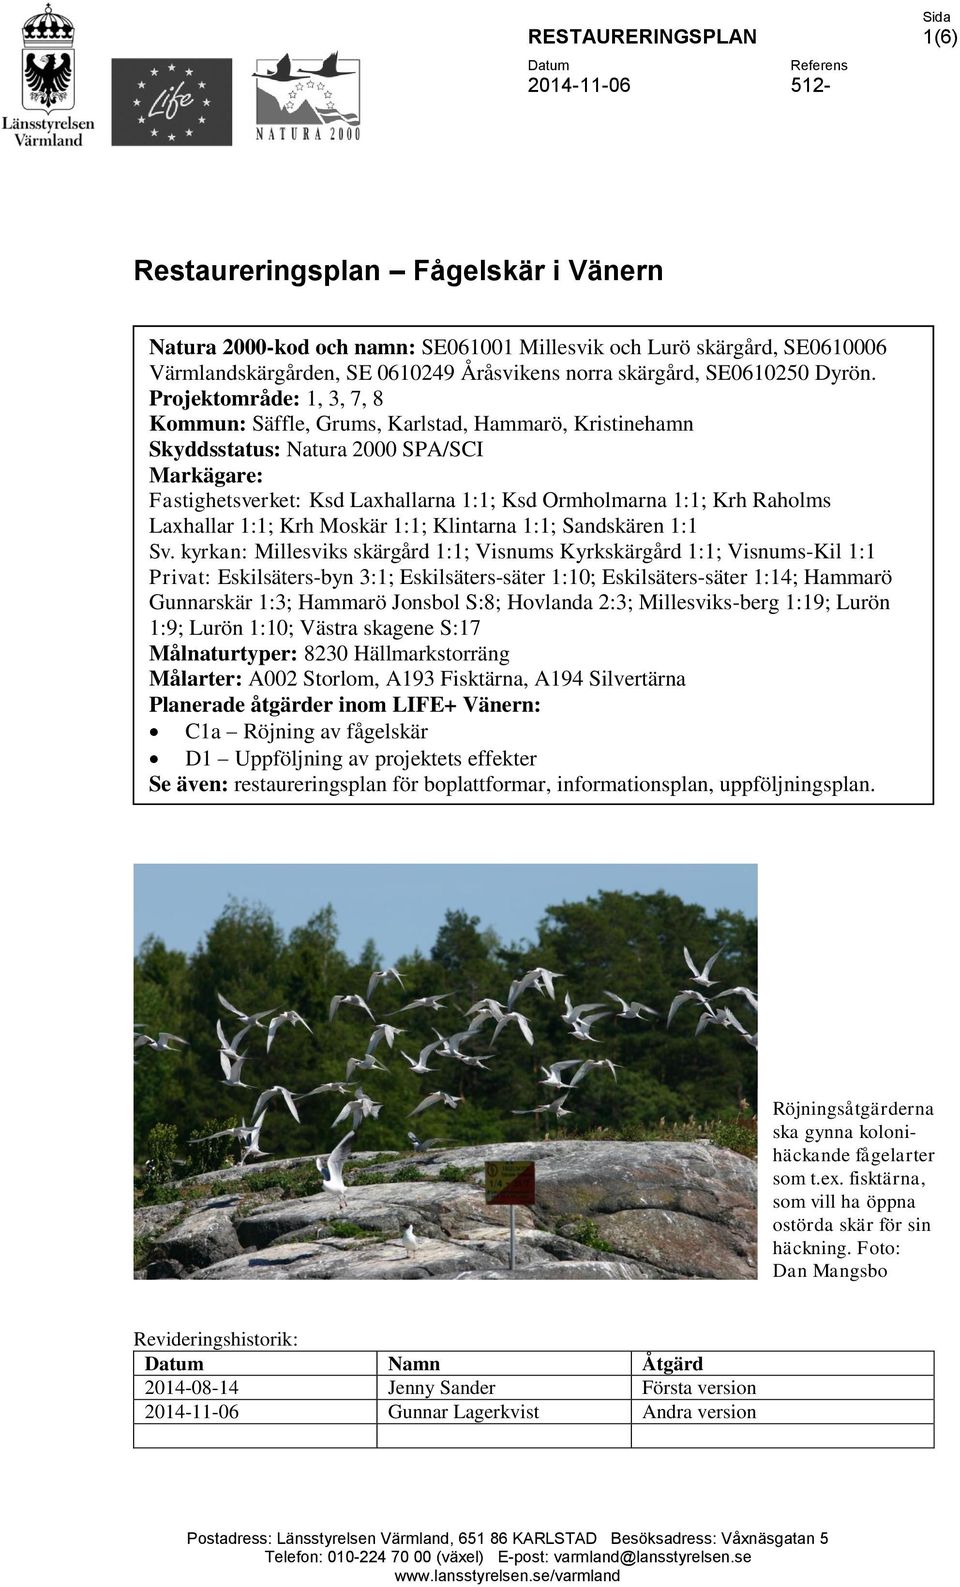 Projektområde: 1, 3, 7, 8 Kommun: Säffle, Grums, Karlstad, Hammarö, Kristinehamn Skyddsstatus: Natura 2000 SPA/SCI Markägare: Fastighetsverket: Ksd Laxhallarna 1:1; Ksd Ormholmarna 1:1; Krh Raholms